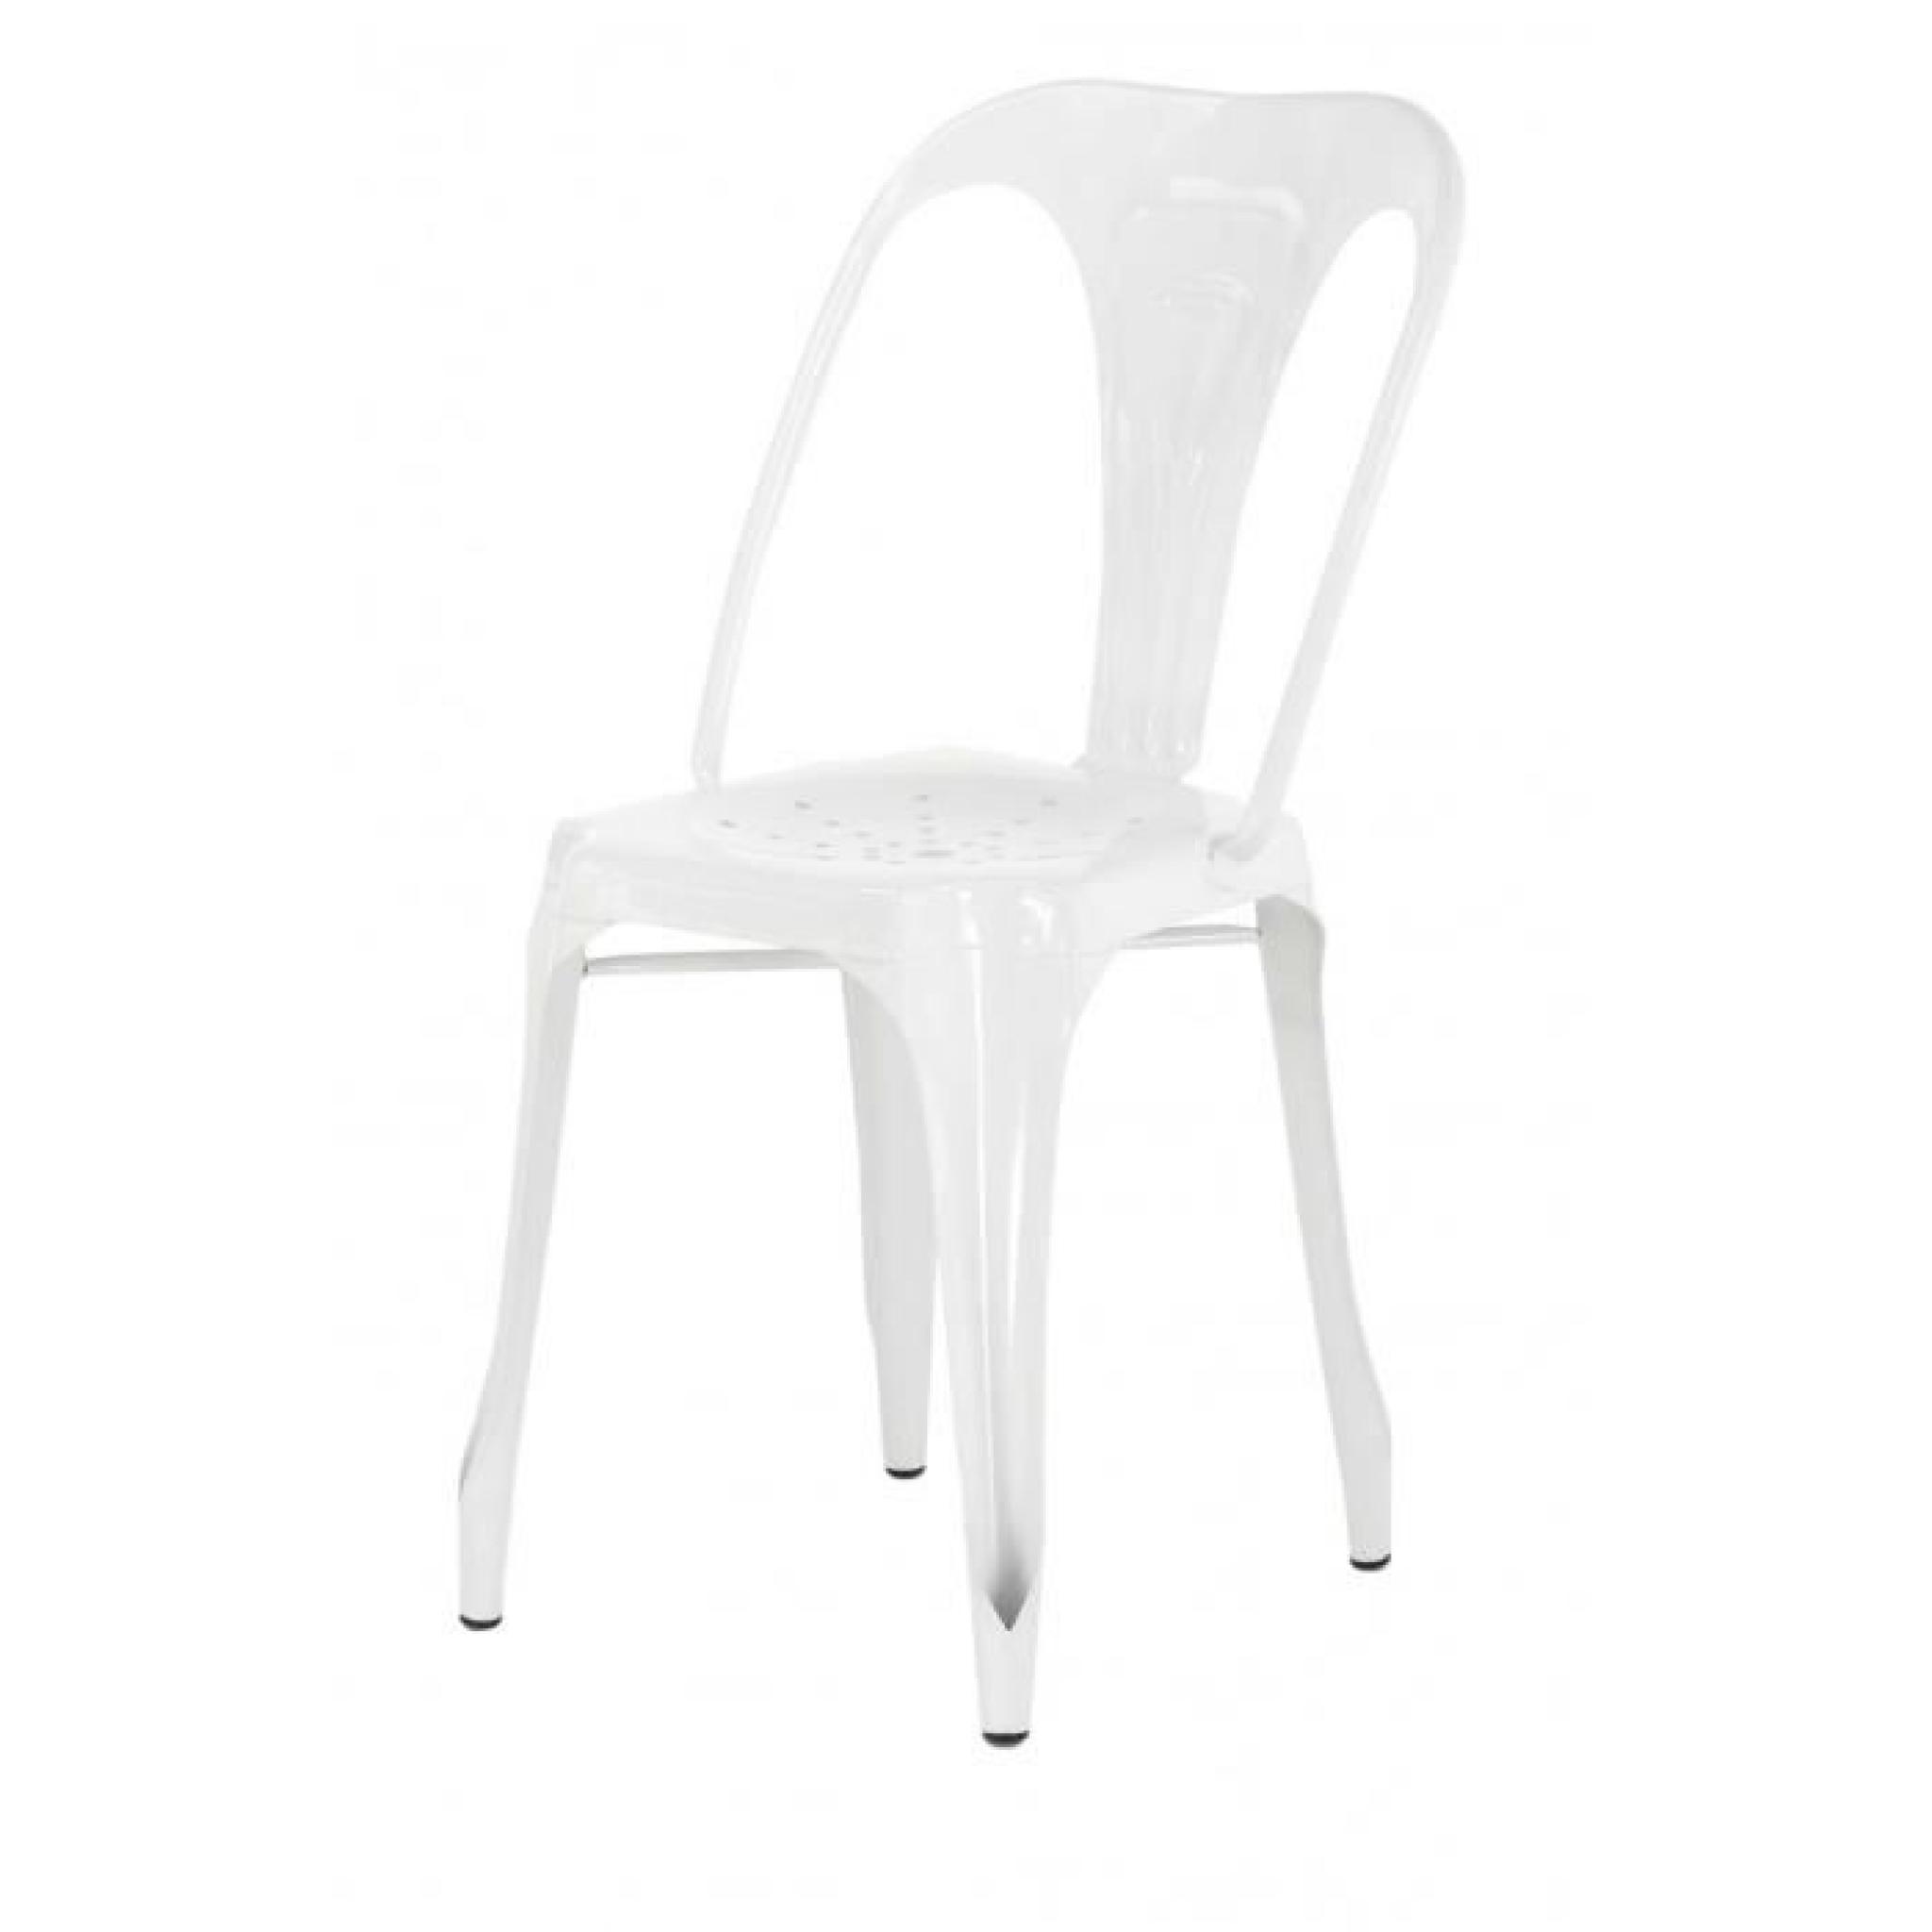 4x Chaise industrielle métal blanc brillant Indus - Inwood pas cher